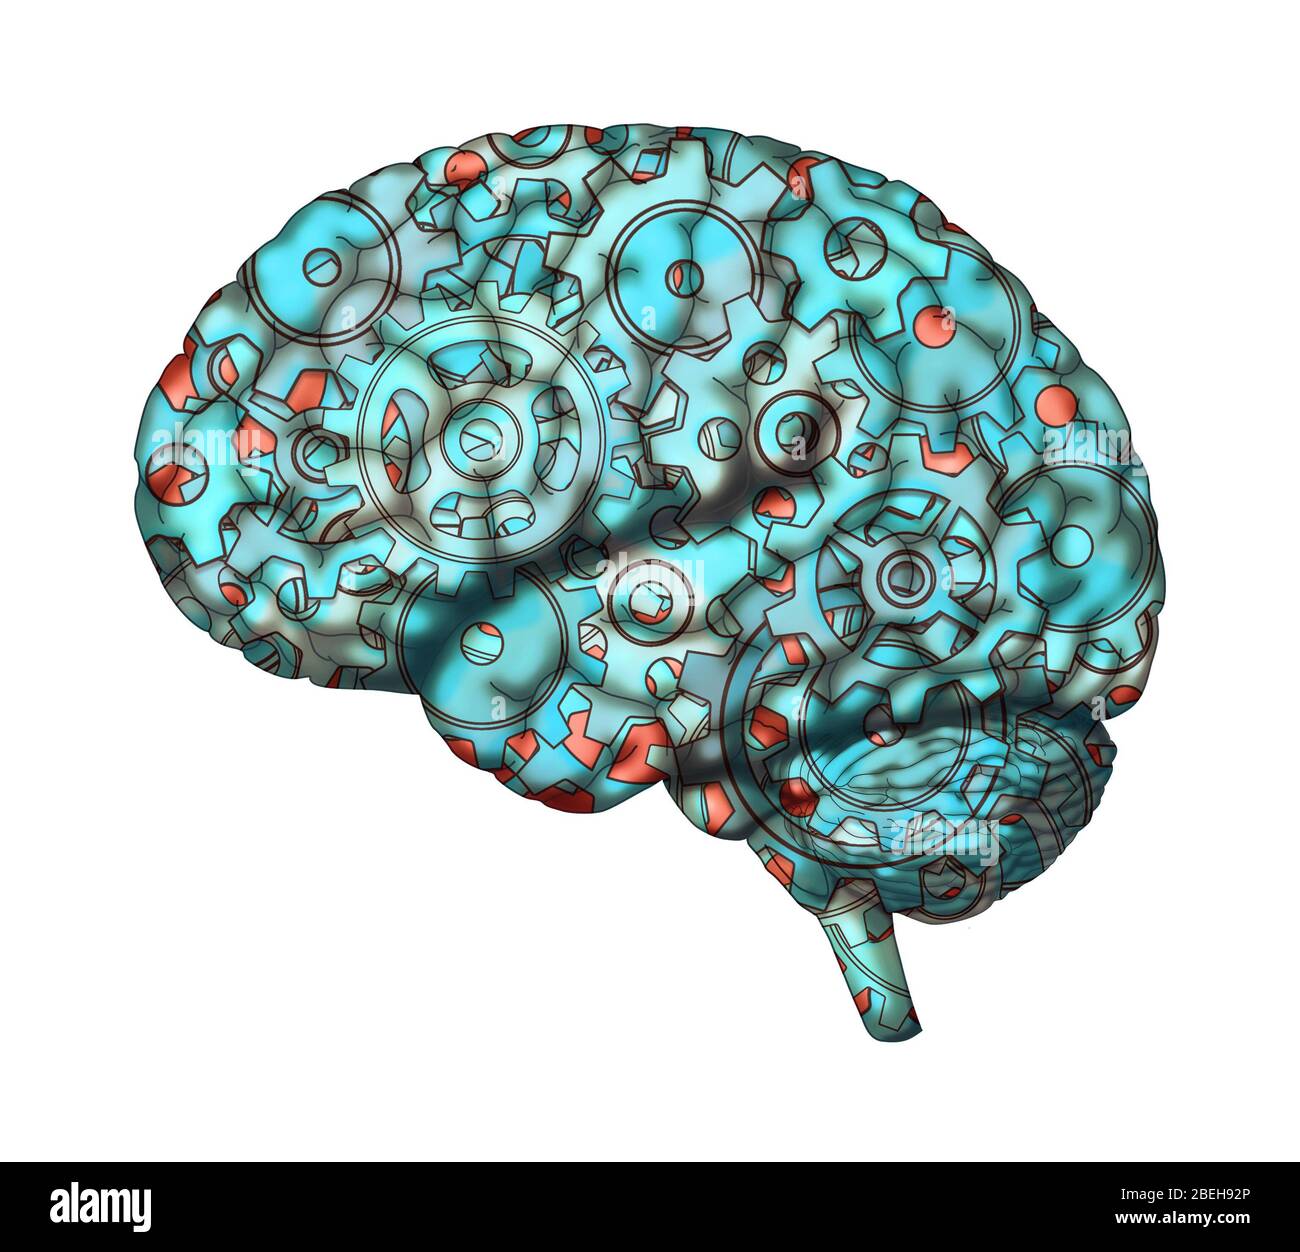 Eine konzeptuelle Illustration, die Zahnräder im Gehirn zeigt. Stockfoto